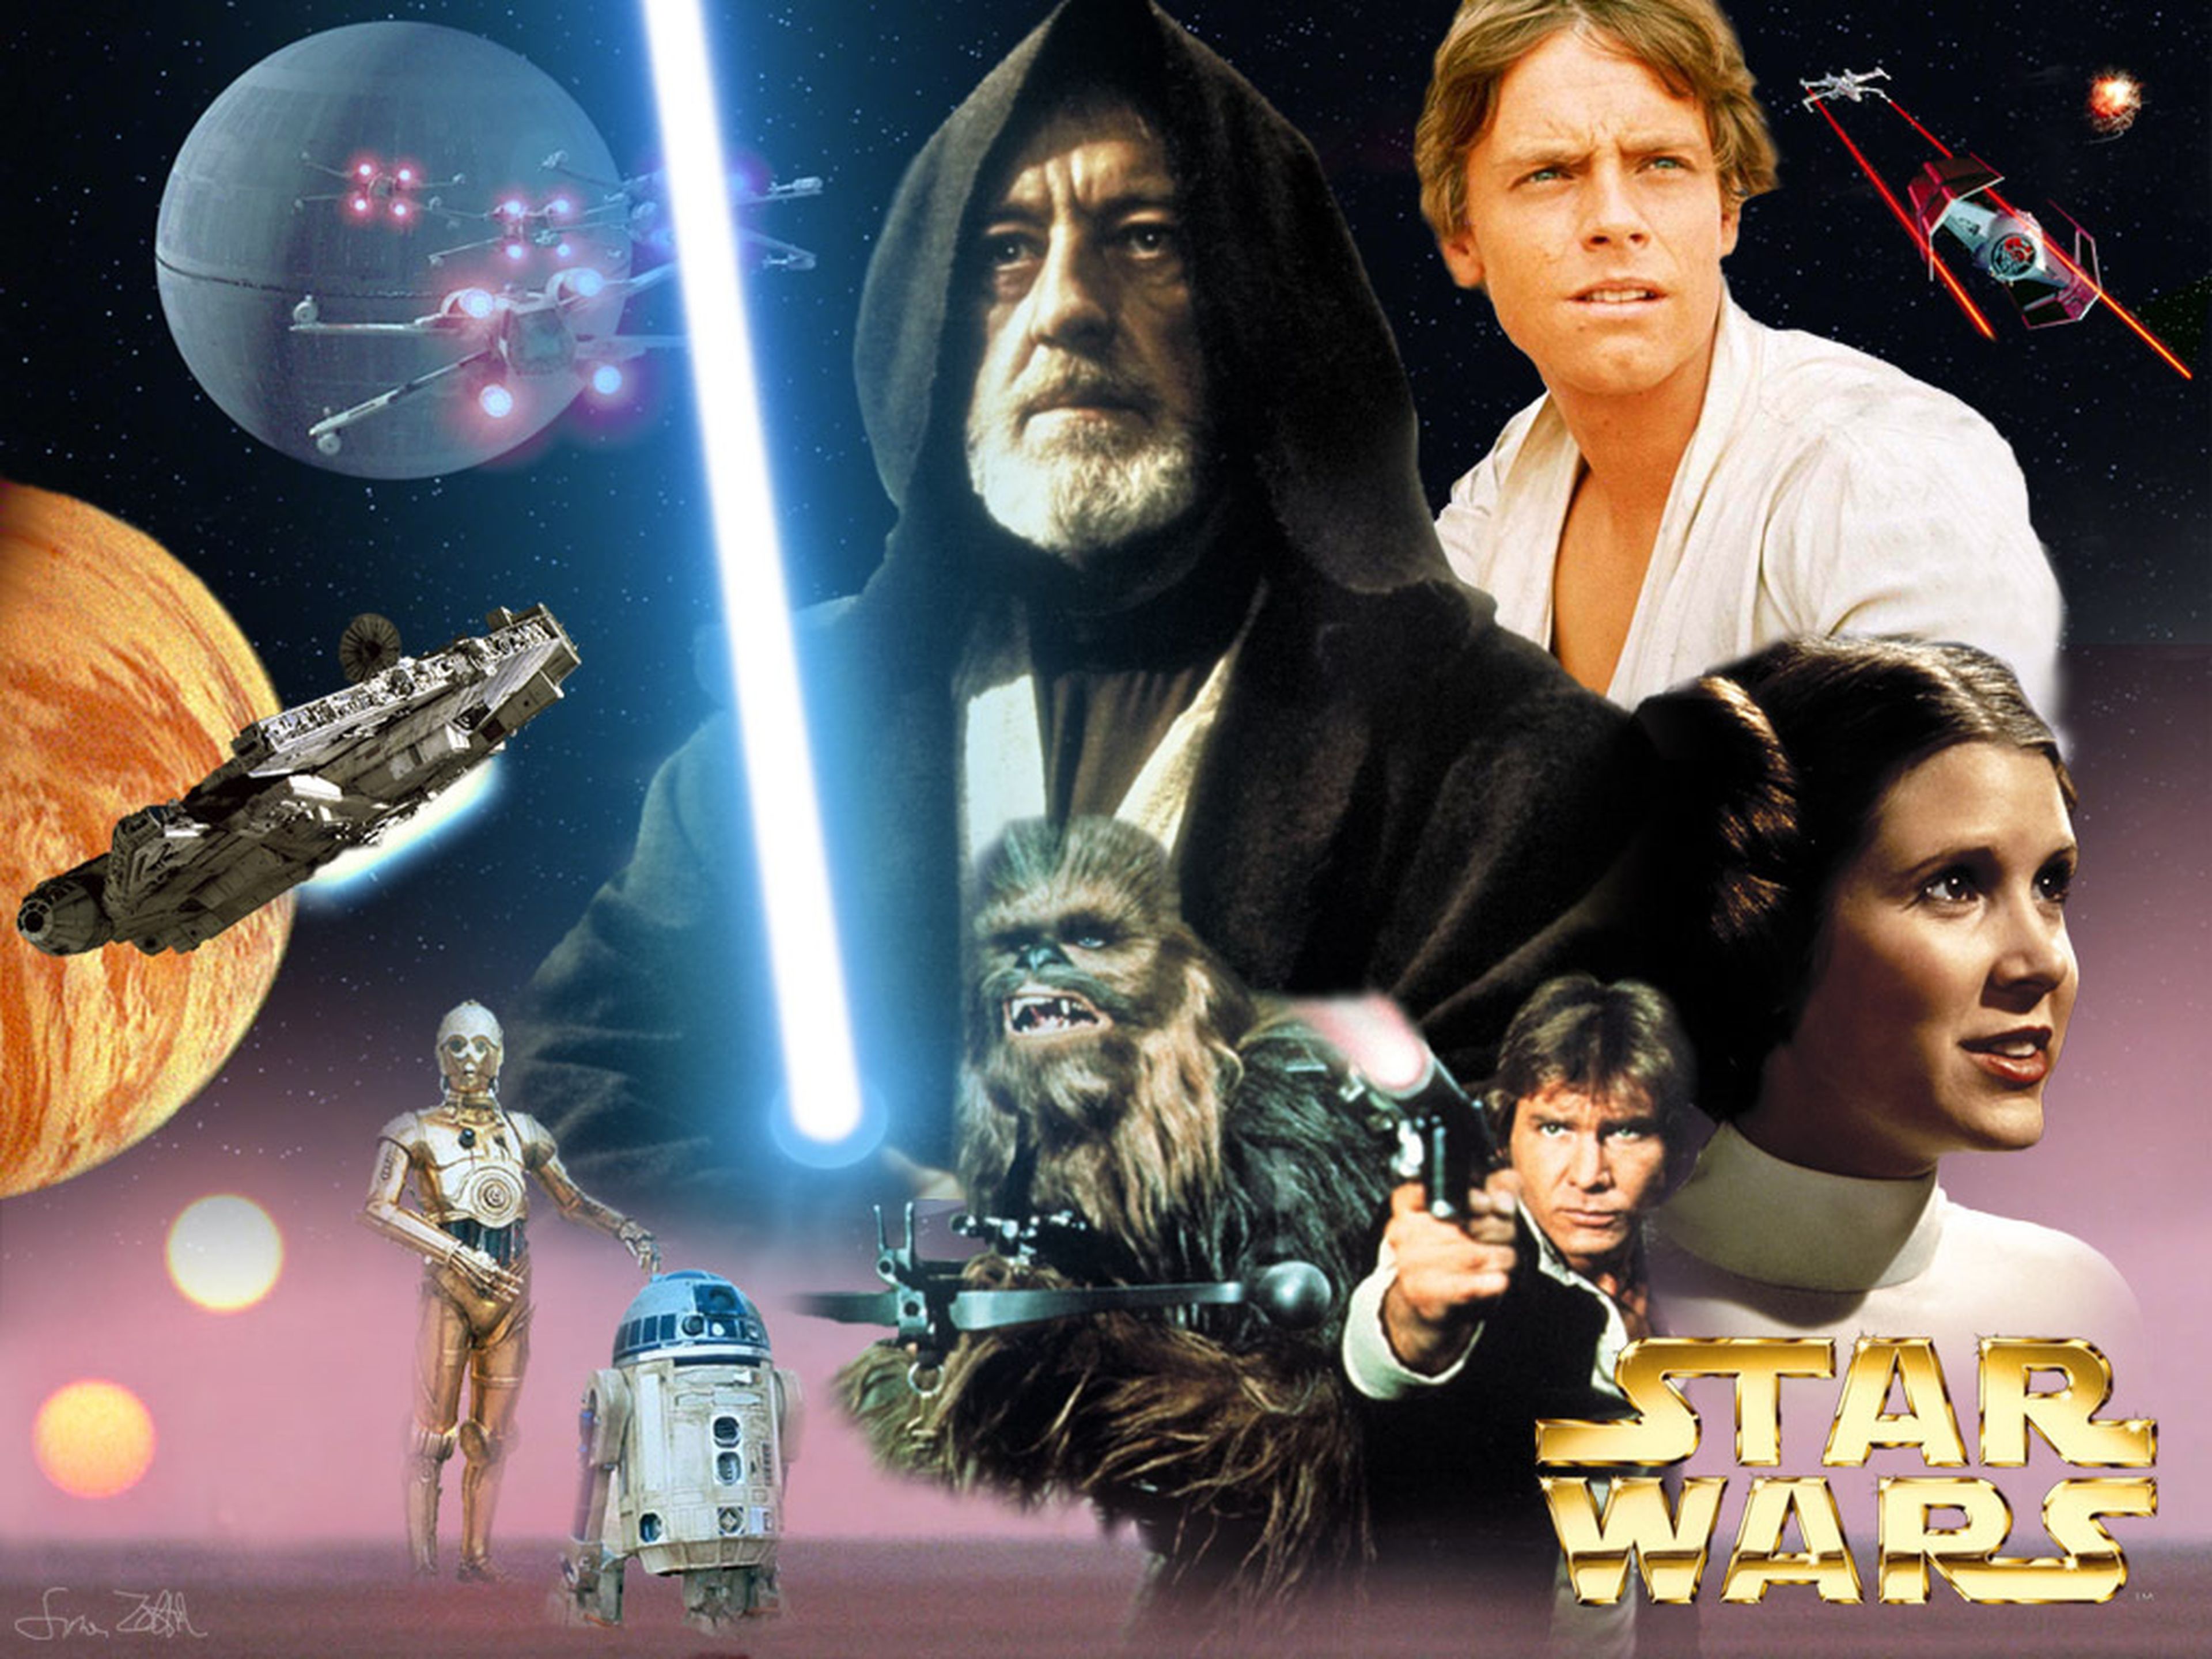 Star Wars - El Episodio IV de 1977 es recuperado sin añadidos digitales por unos fans